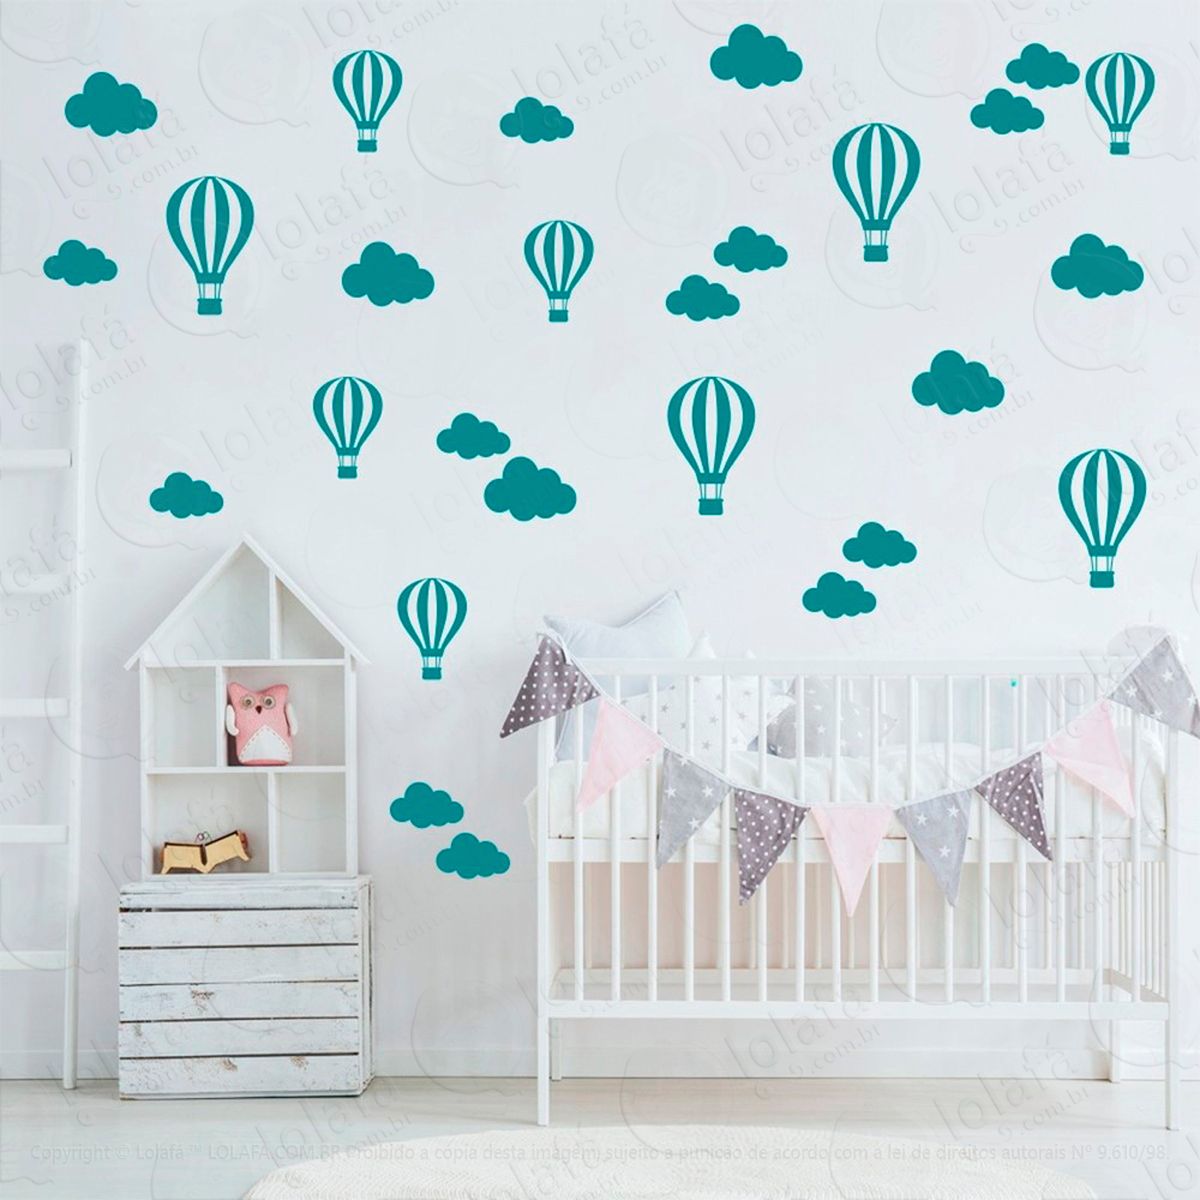 adesivos nuvens e balões 50 peças adesivos para quarto de bebê infantil - mod:836